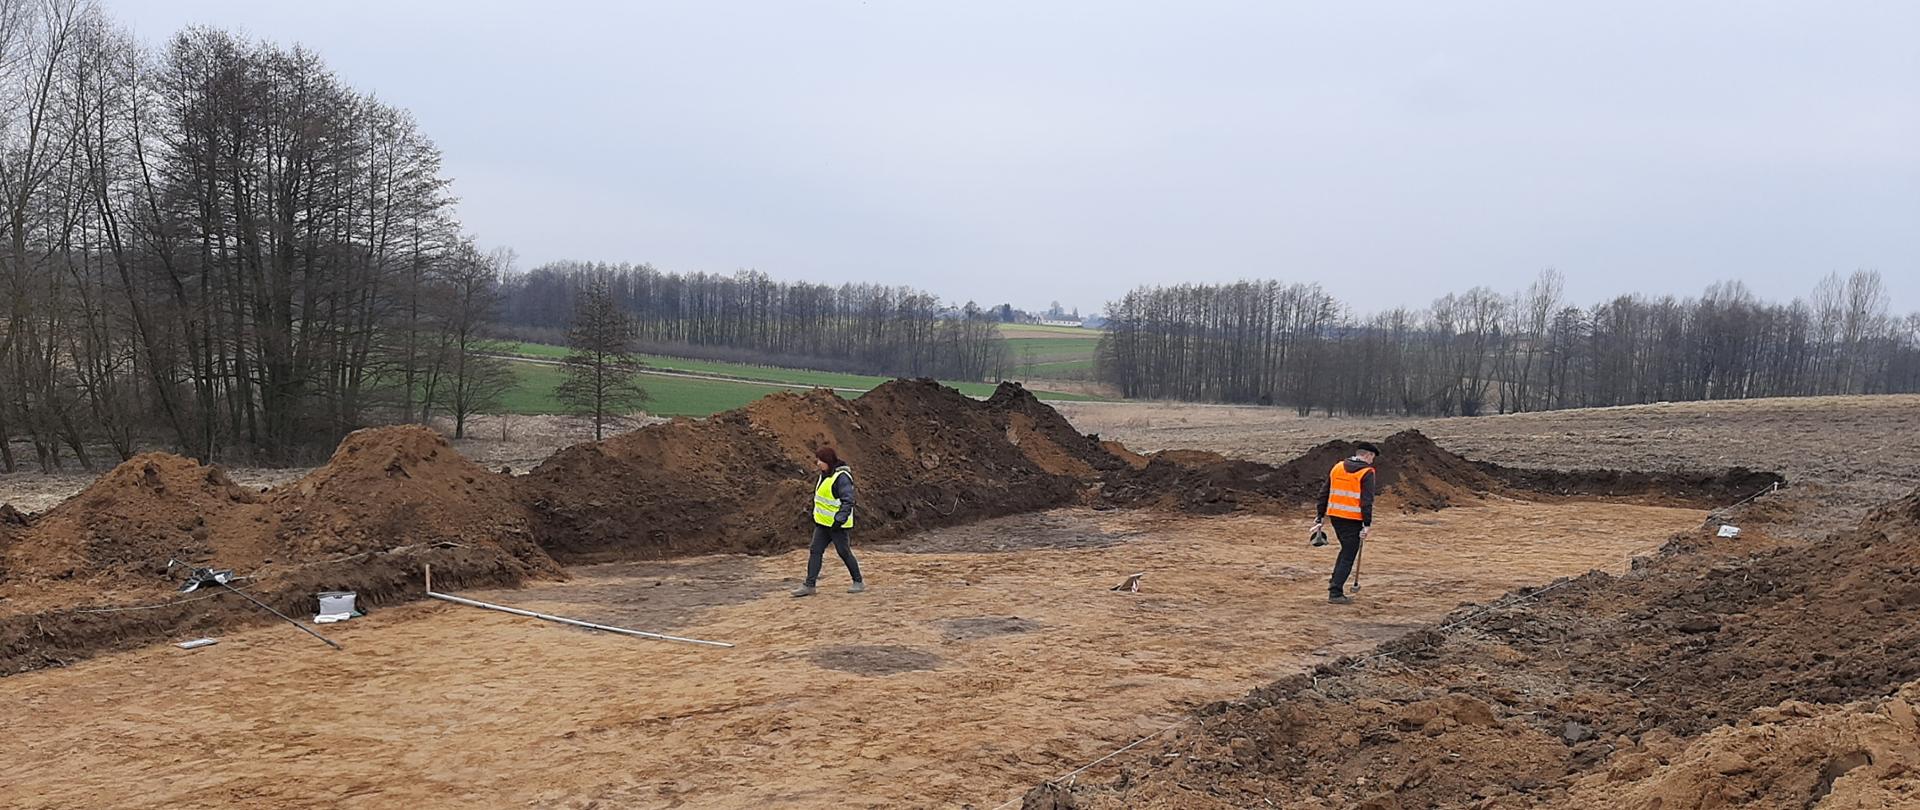 Budowa obwodnicy Opatowa - prace archeologiczne, odkryty pas ziemi, dwóch archeologów sprawdza teren